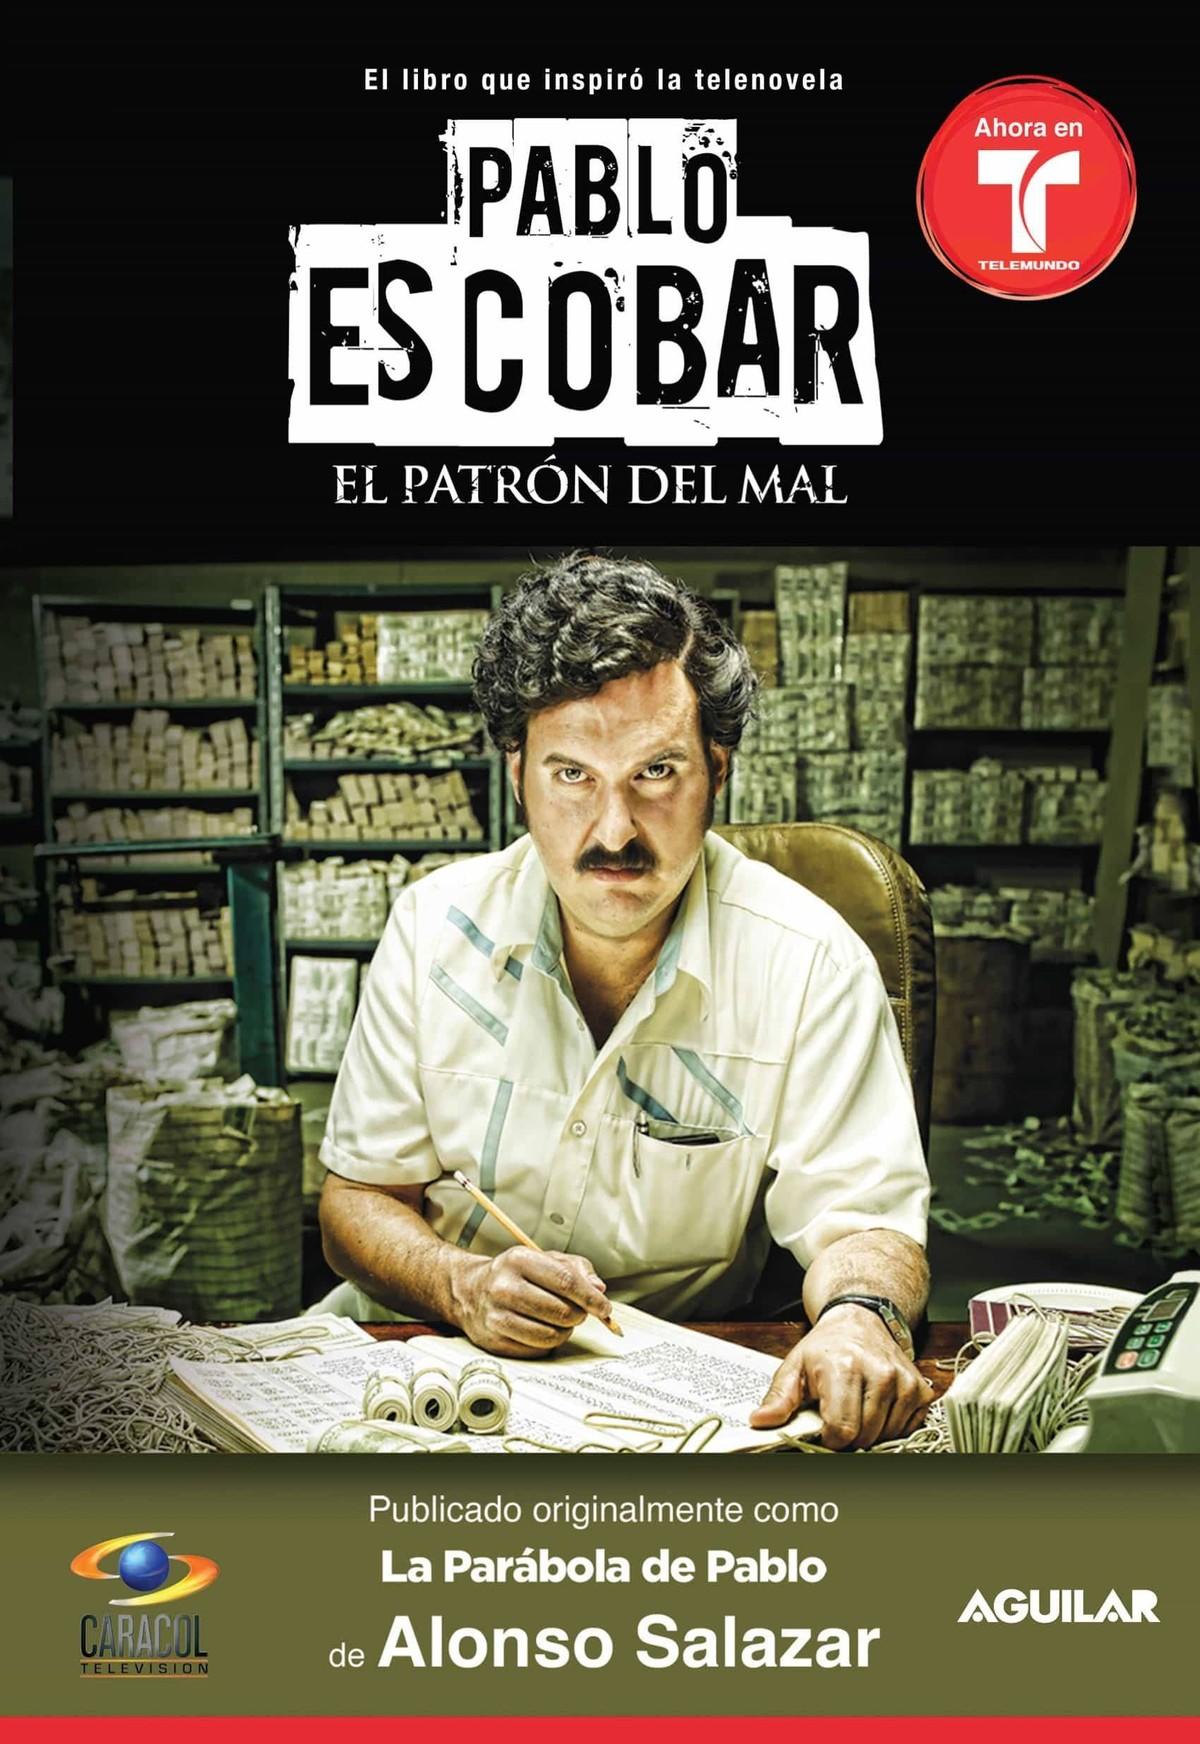 Alonso Salazar, Pablo Escobar: El Patron del Mal, 2010.